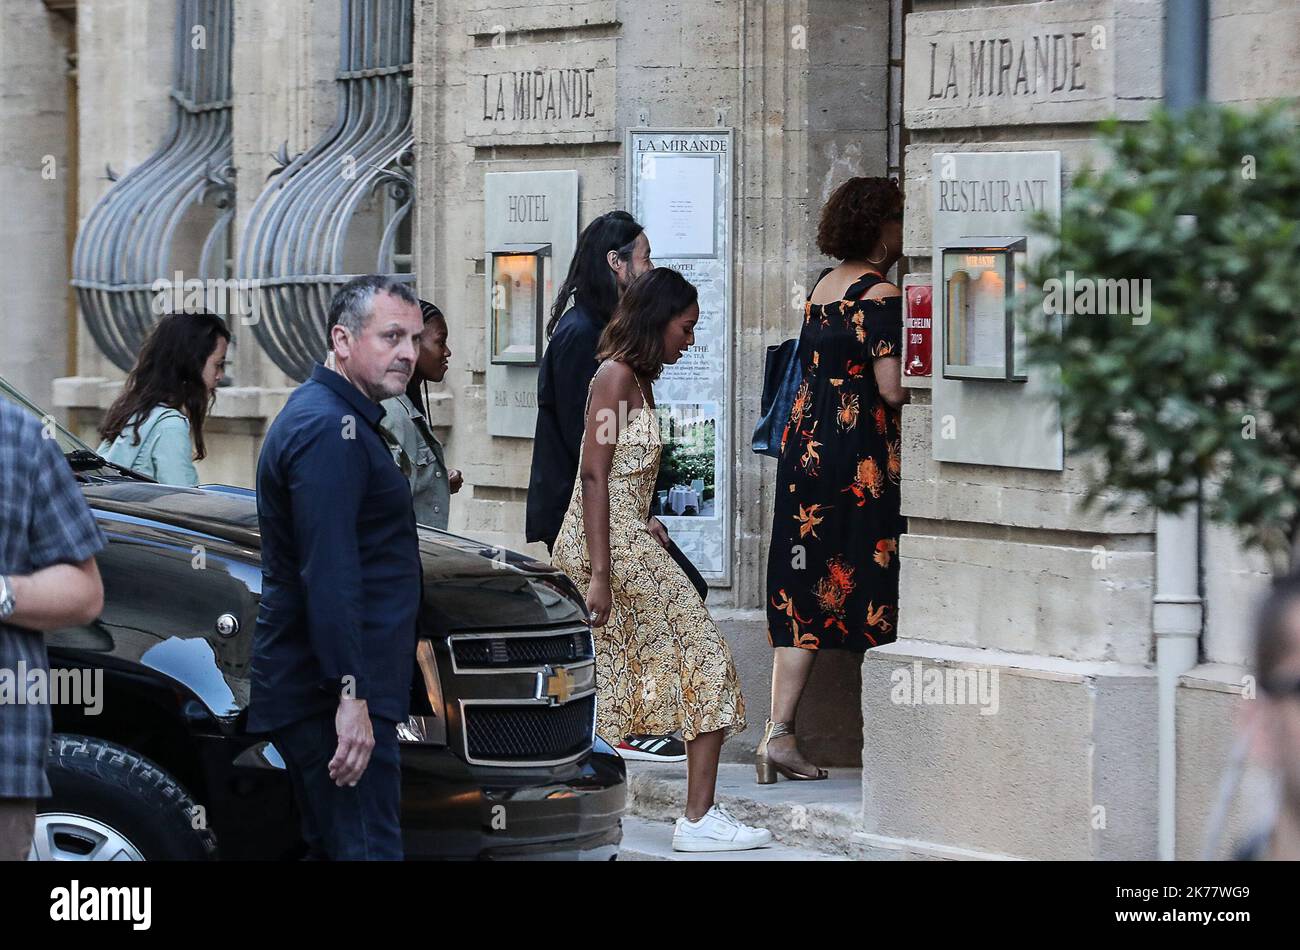 Sasha Obama considéré comme l'ancien président américain Barack Obama et sa famille sont en vacances dans le sud de la France. Leur imposante caravane de voitures est proche du Palais des Papes à Avignon Banque D'Images